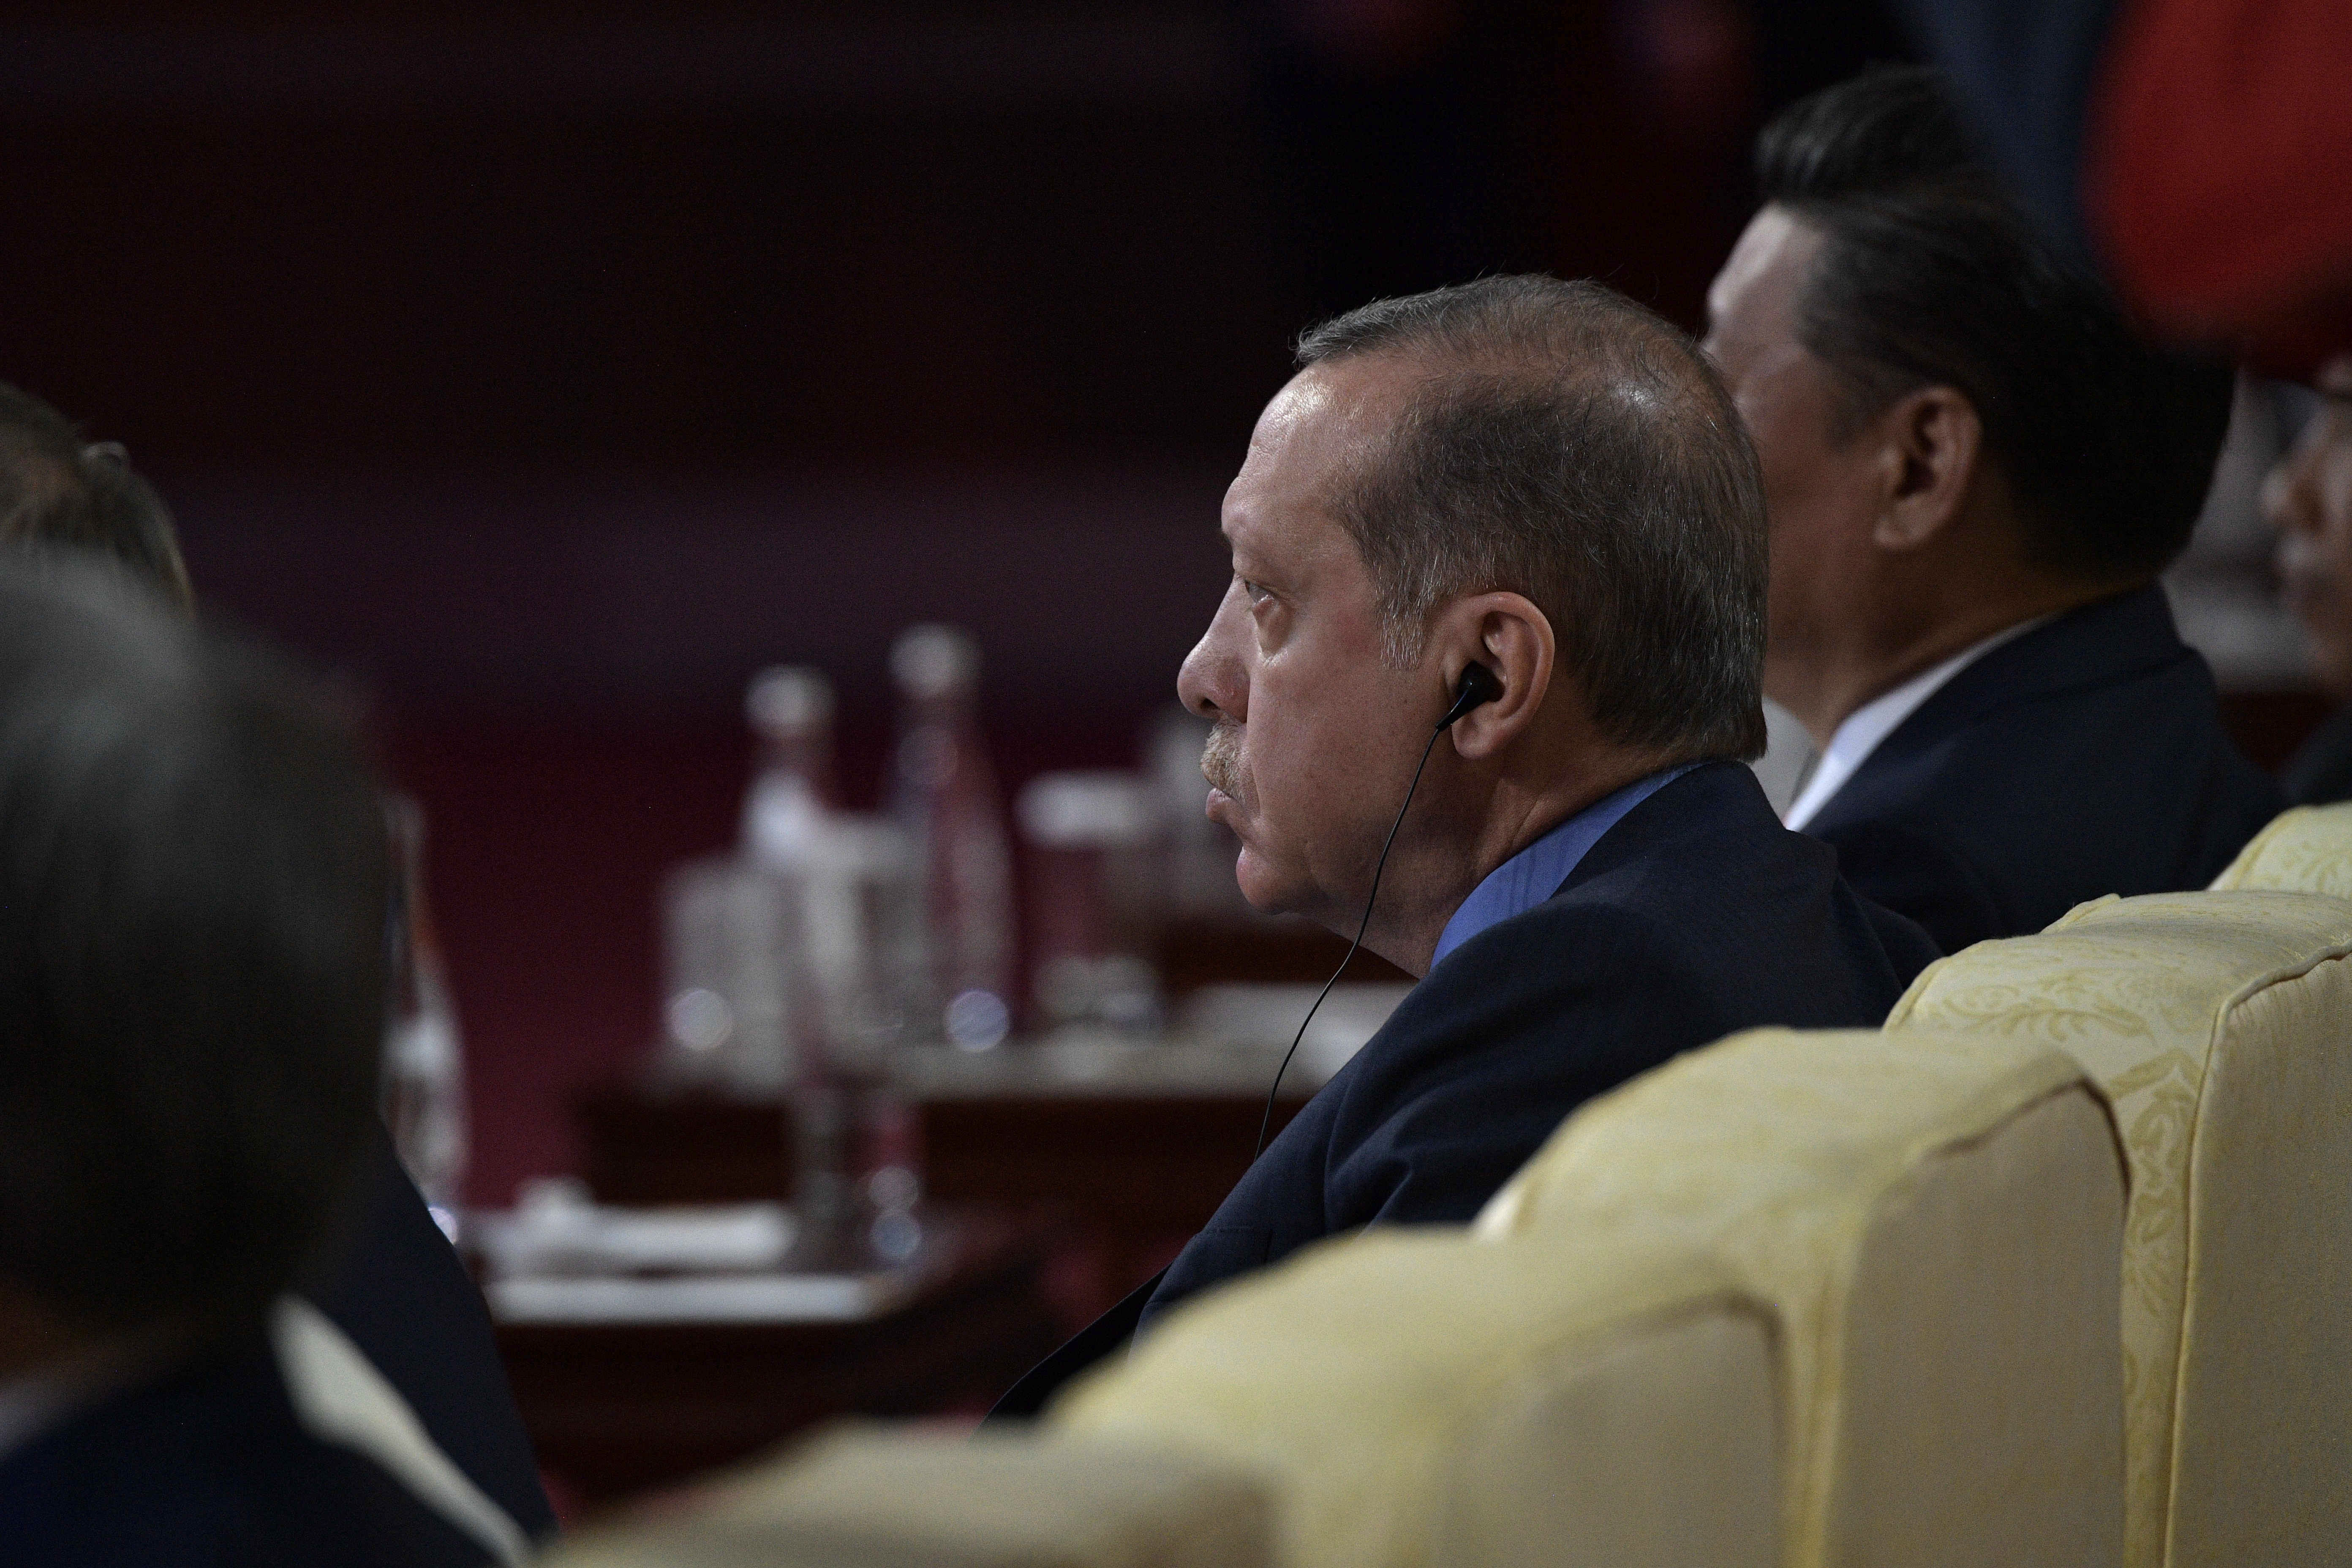 Президент Турции Тайип Эрдоган осудил решение о выдаче ордеров на арест своих охранников.
Фото: &copy; РИА Новости/Алексей Никольский